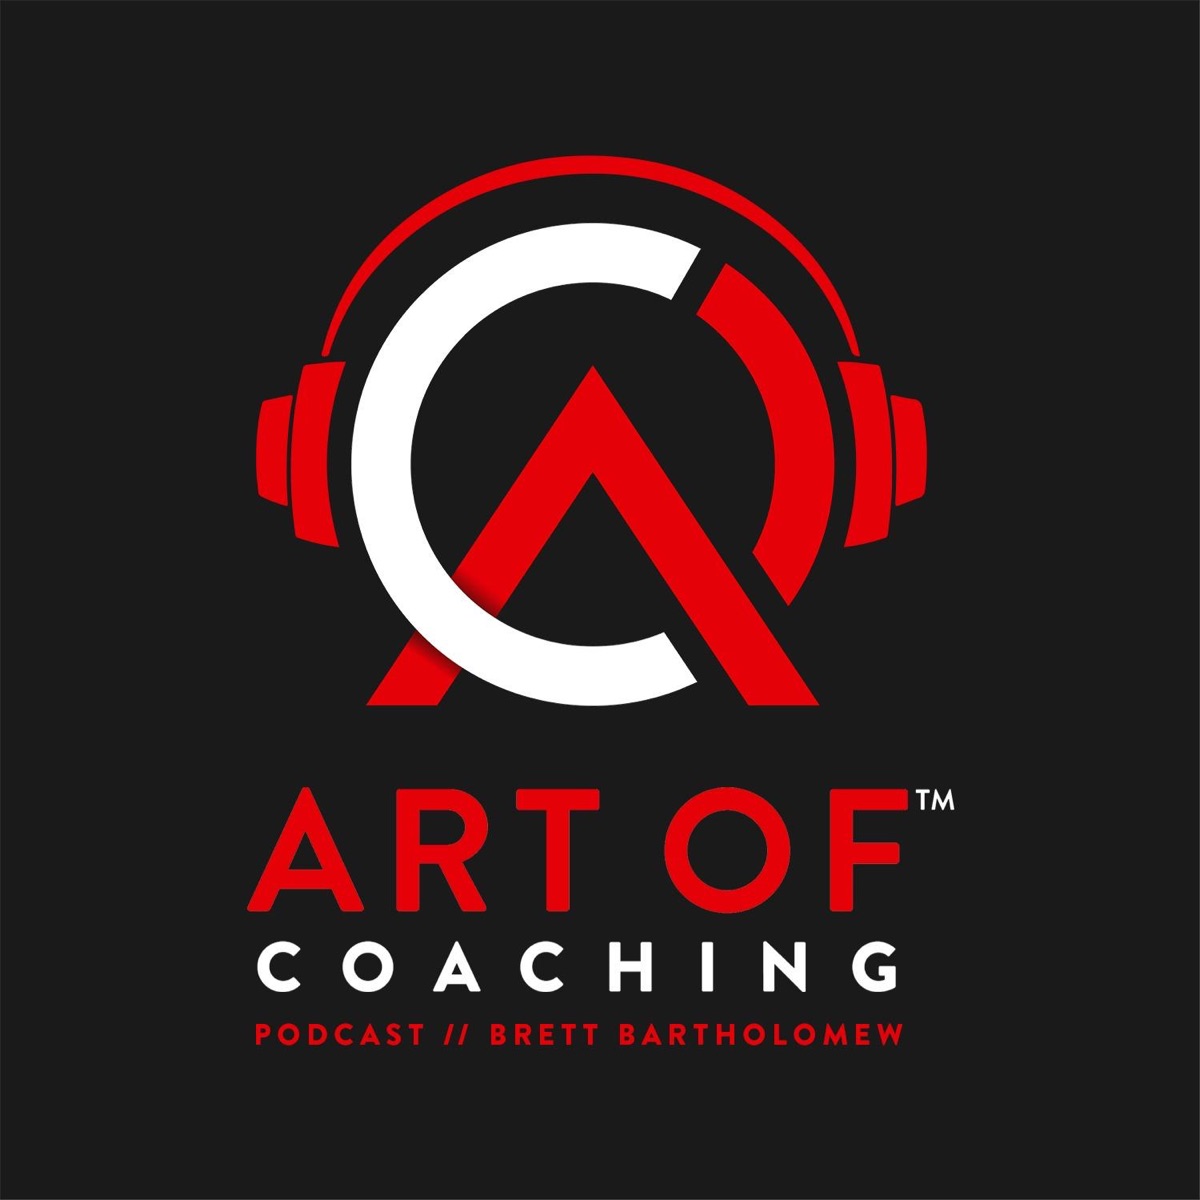 Brett Bartholomew - Bought In - The Art of Coaching (Full)